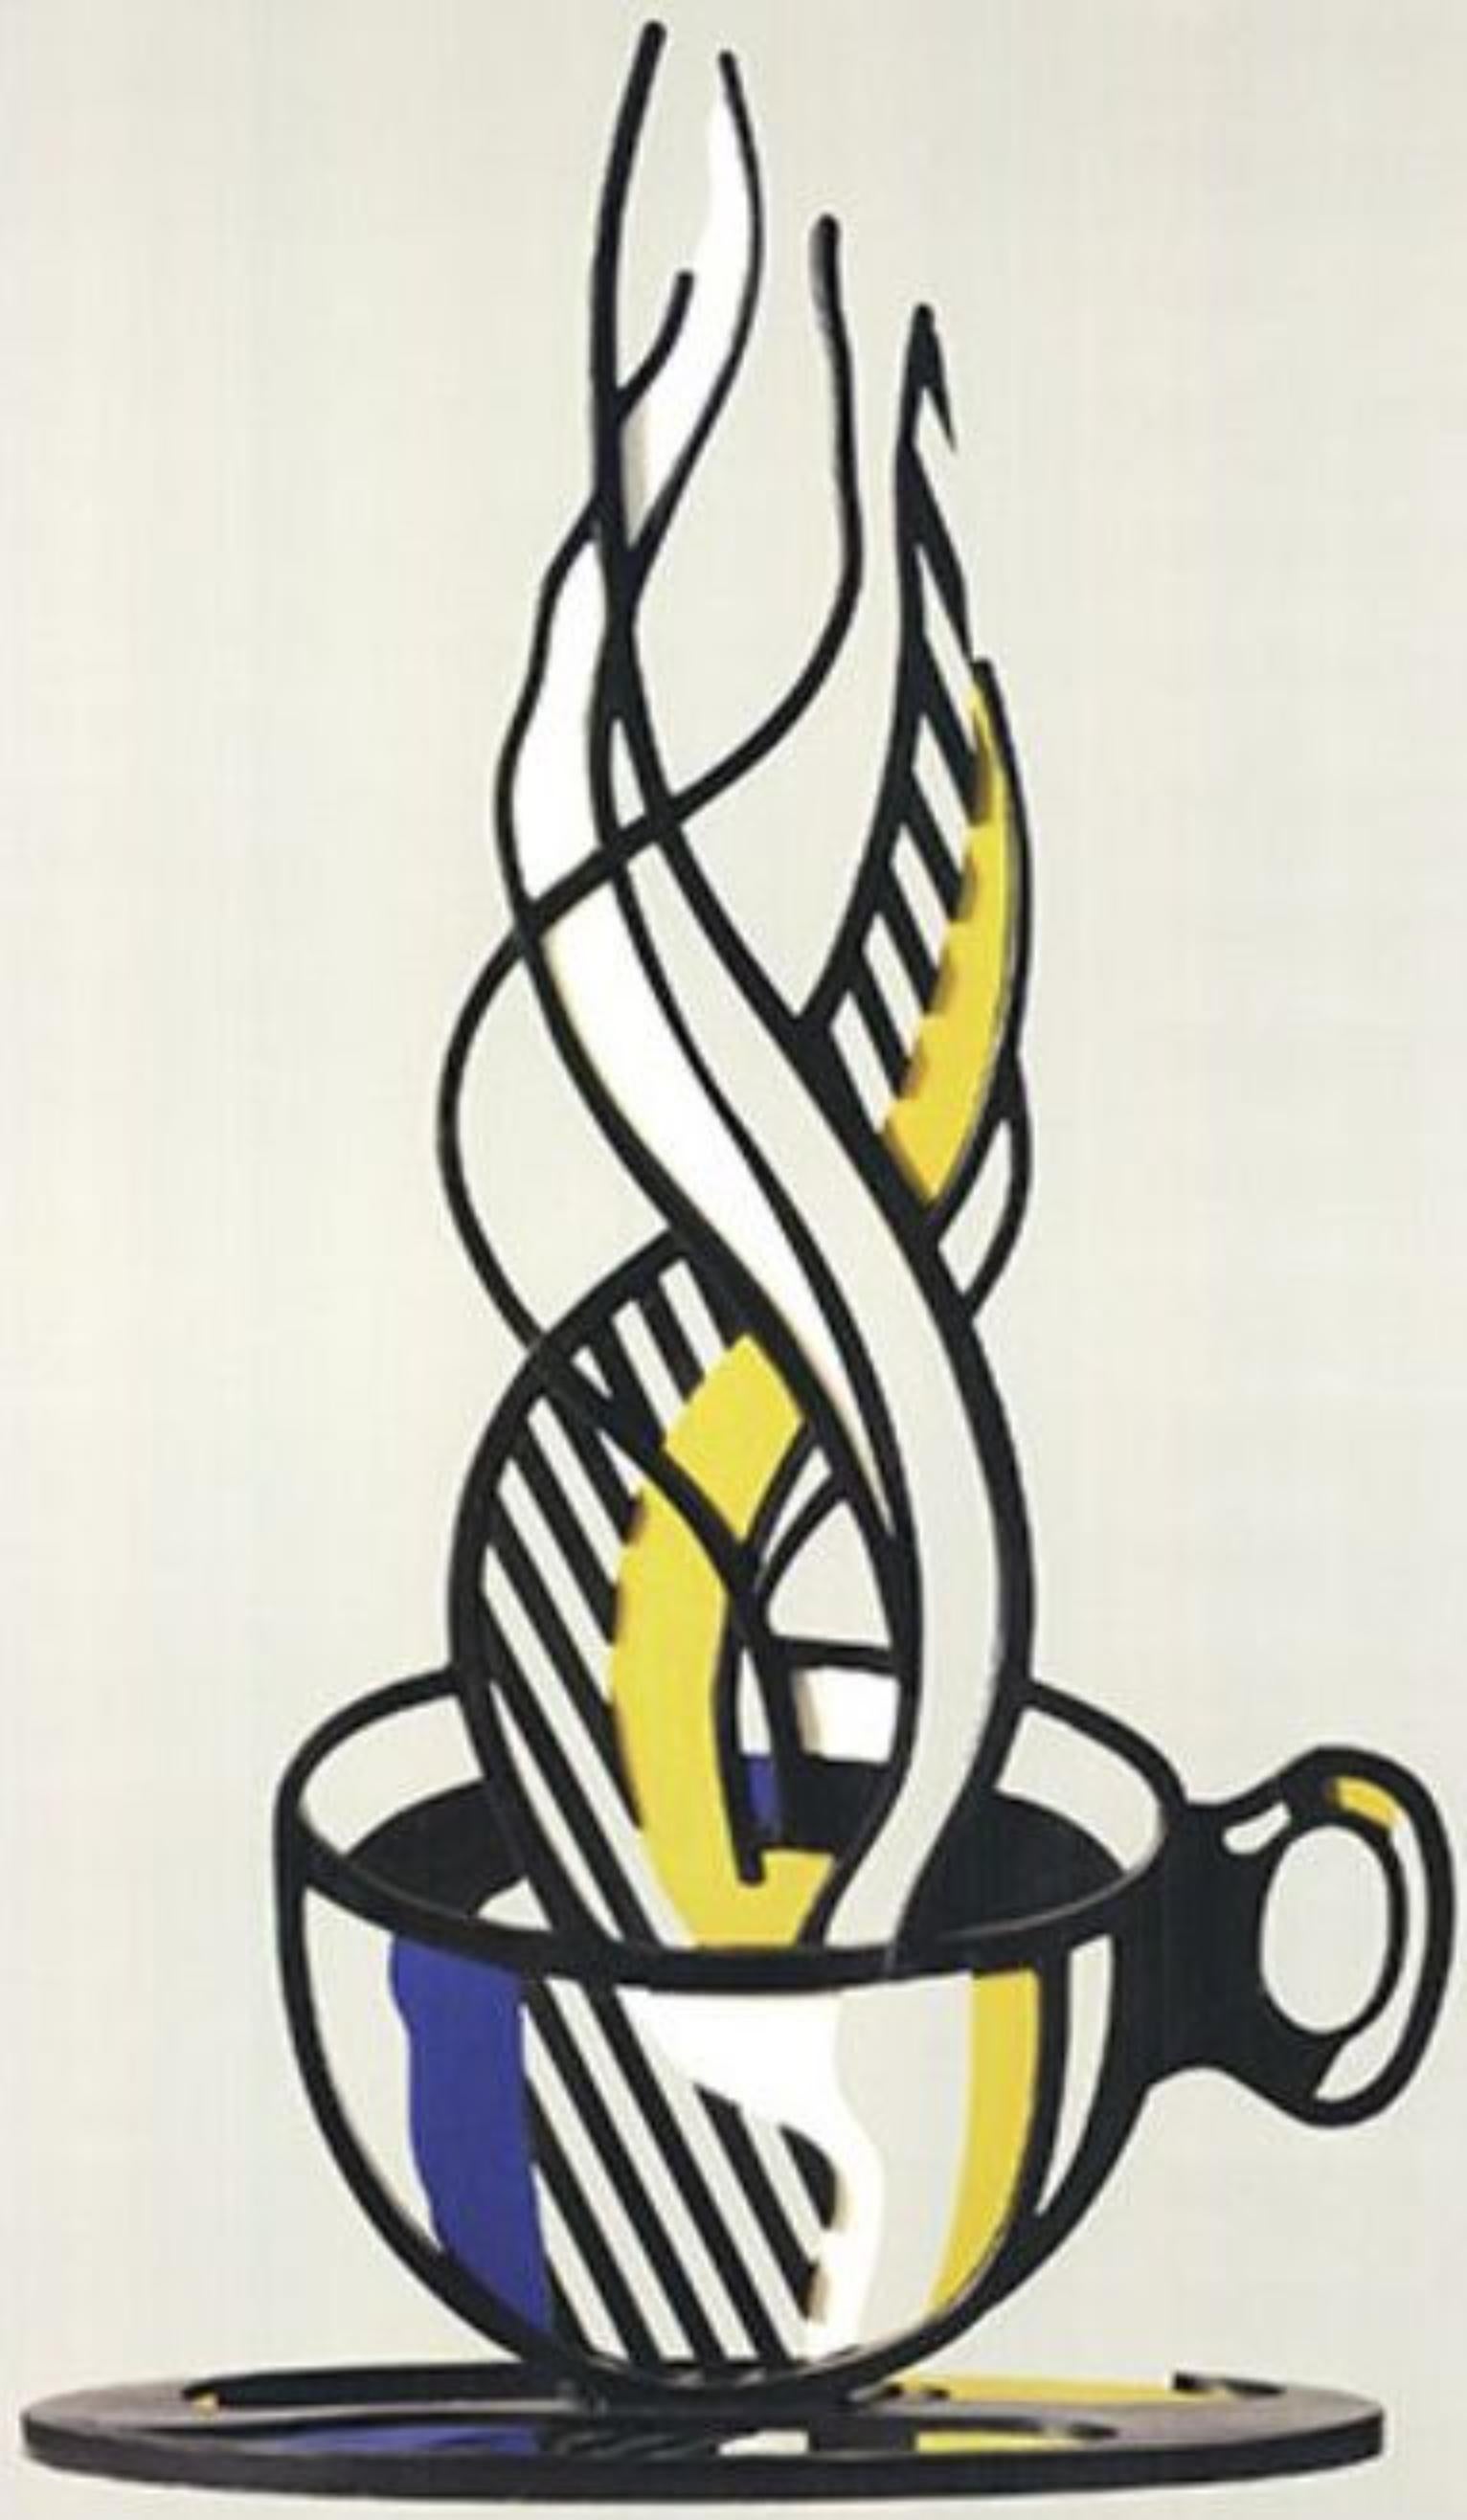 ROY LICHTENSTEIN Cup and Saucer, 1989 - Print by Roy Lichtenstein